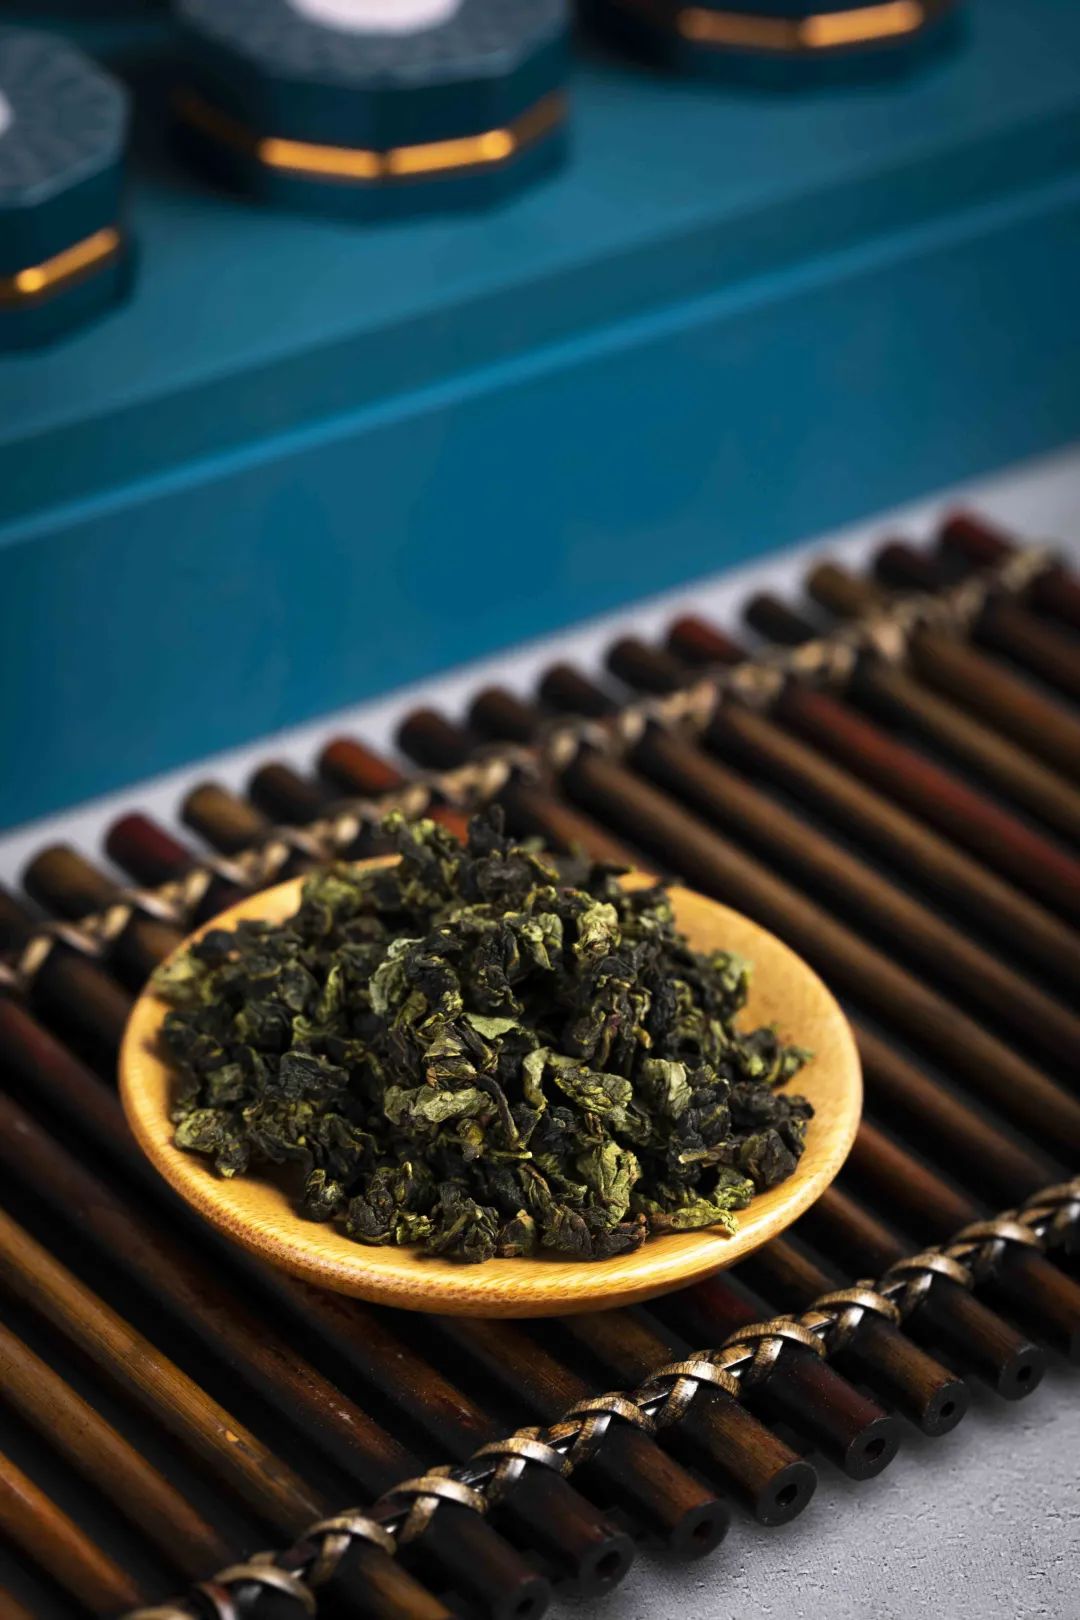 又名青茶,是一种半发酵茶类